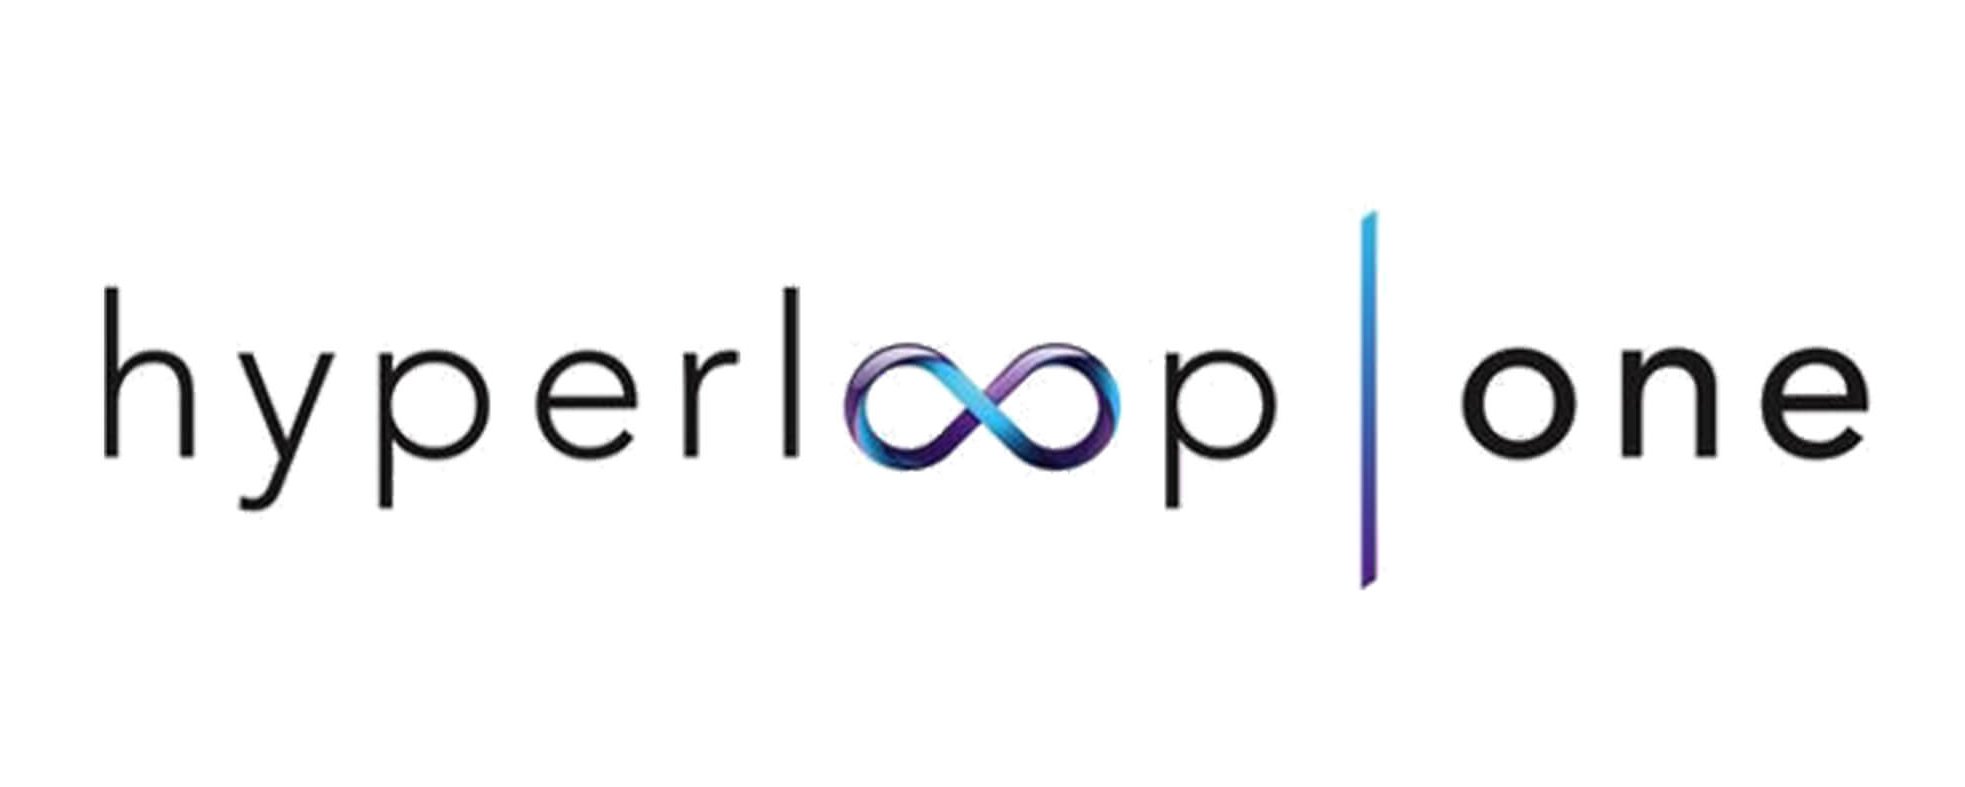 Hyperloop #NewWorkPioneers